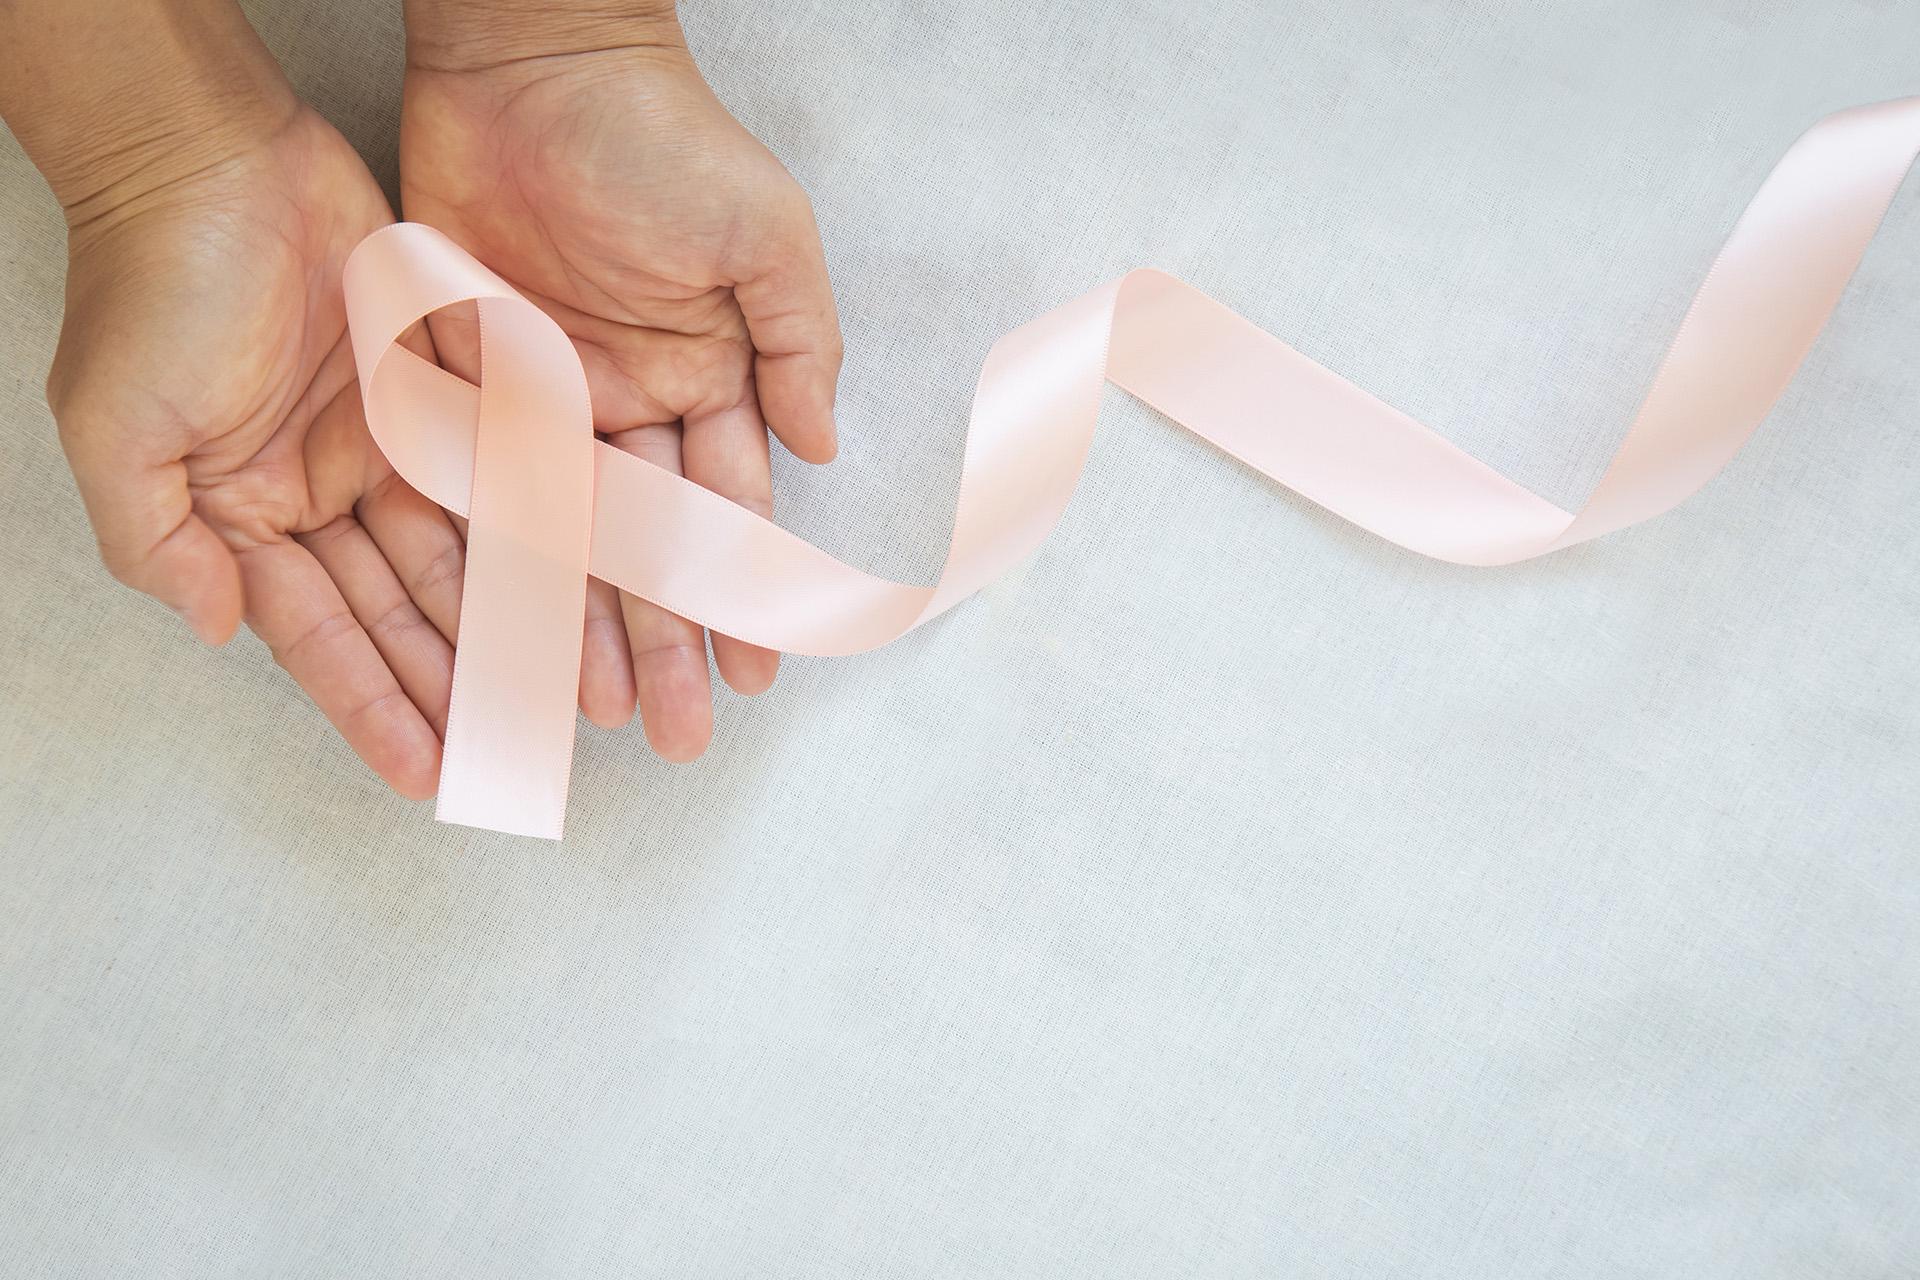 गर्भाशयाचा कर्करोग: प्रारंभिक चिन्हे, कारणे, टप्पे आणि उपचार